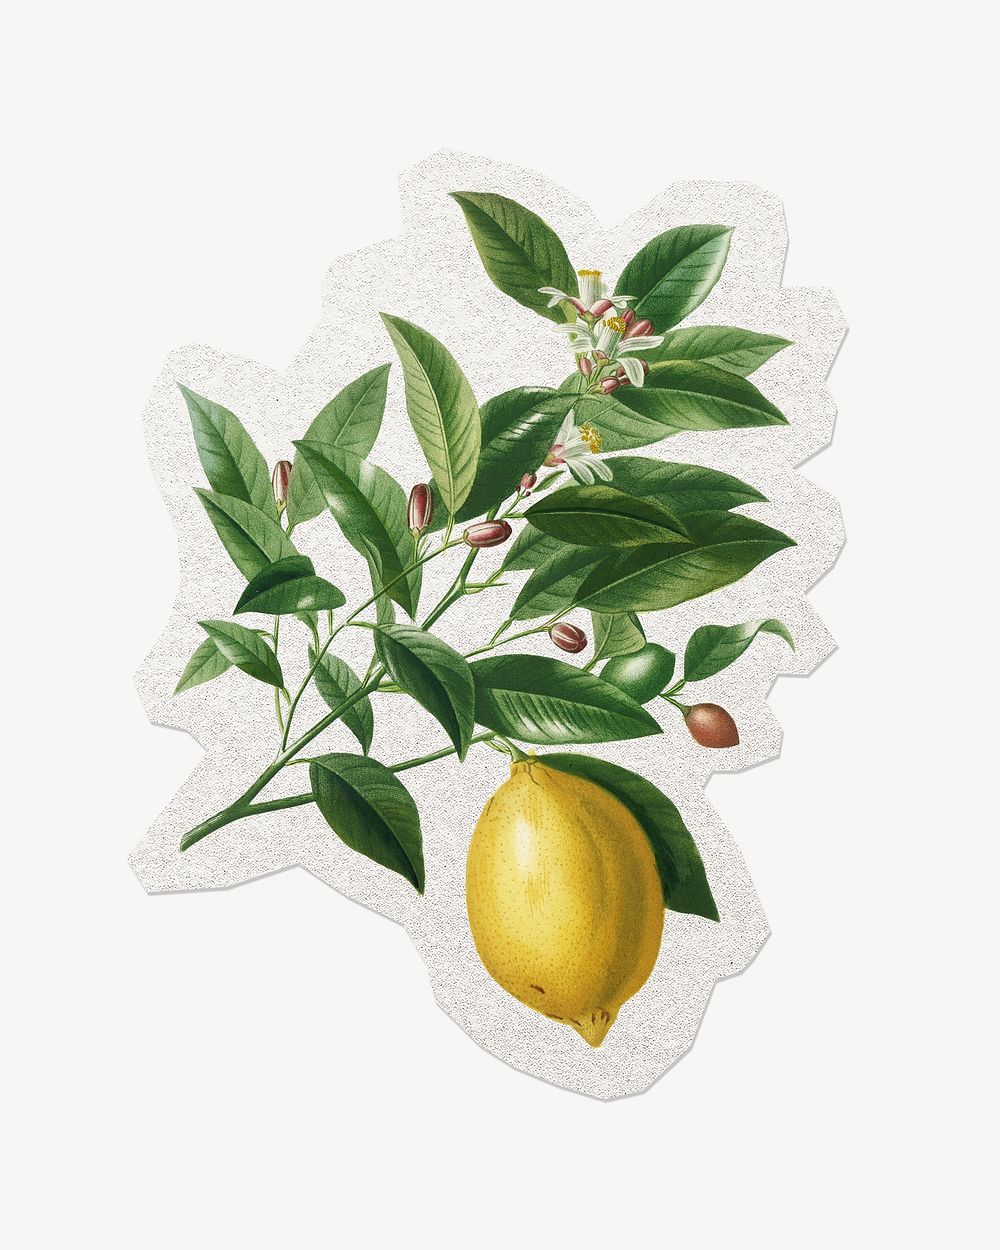 Lemon illustration sticker, vintage fruit collage element